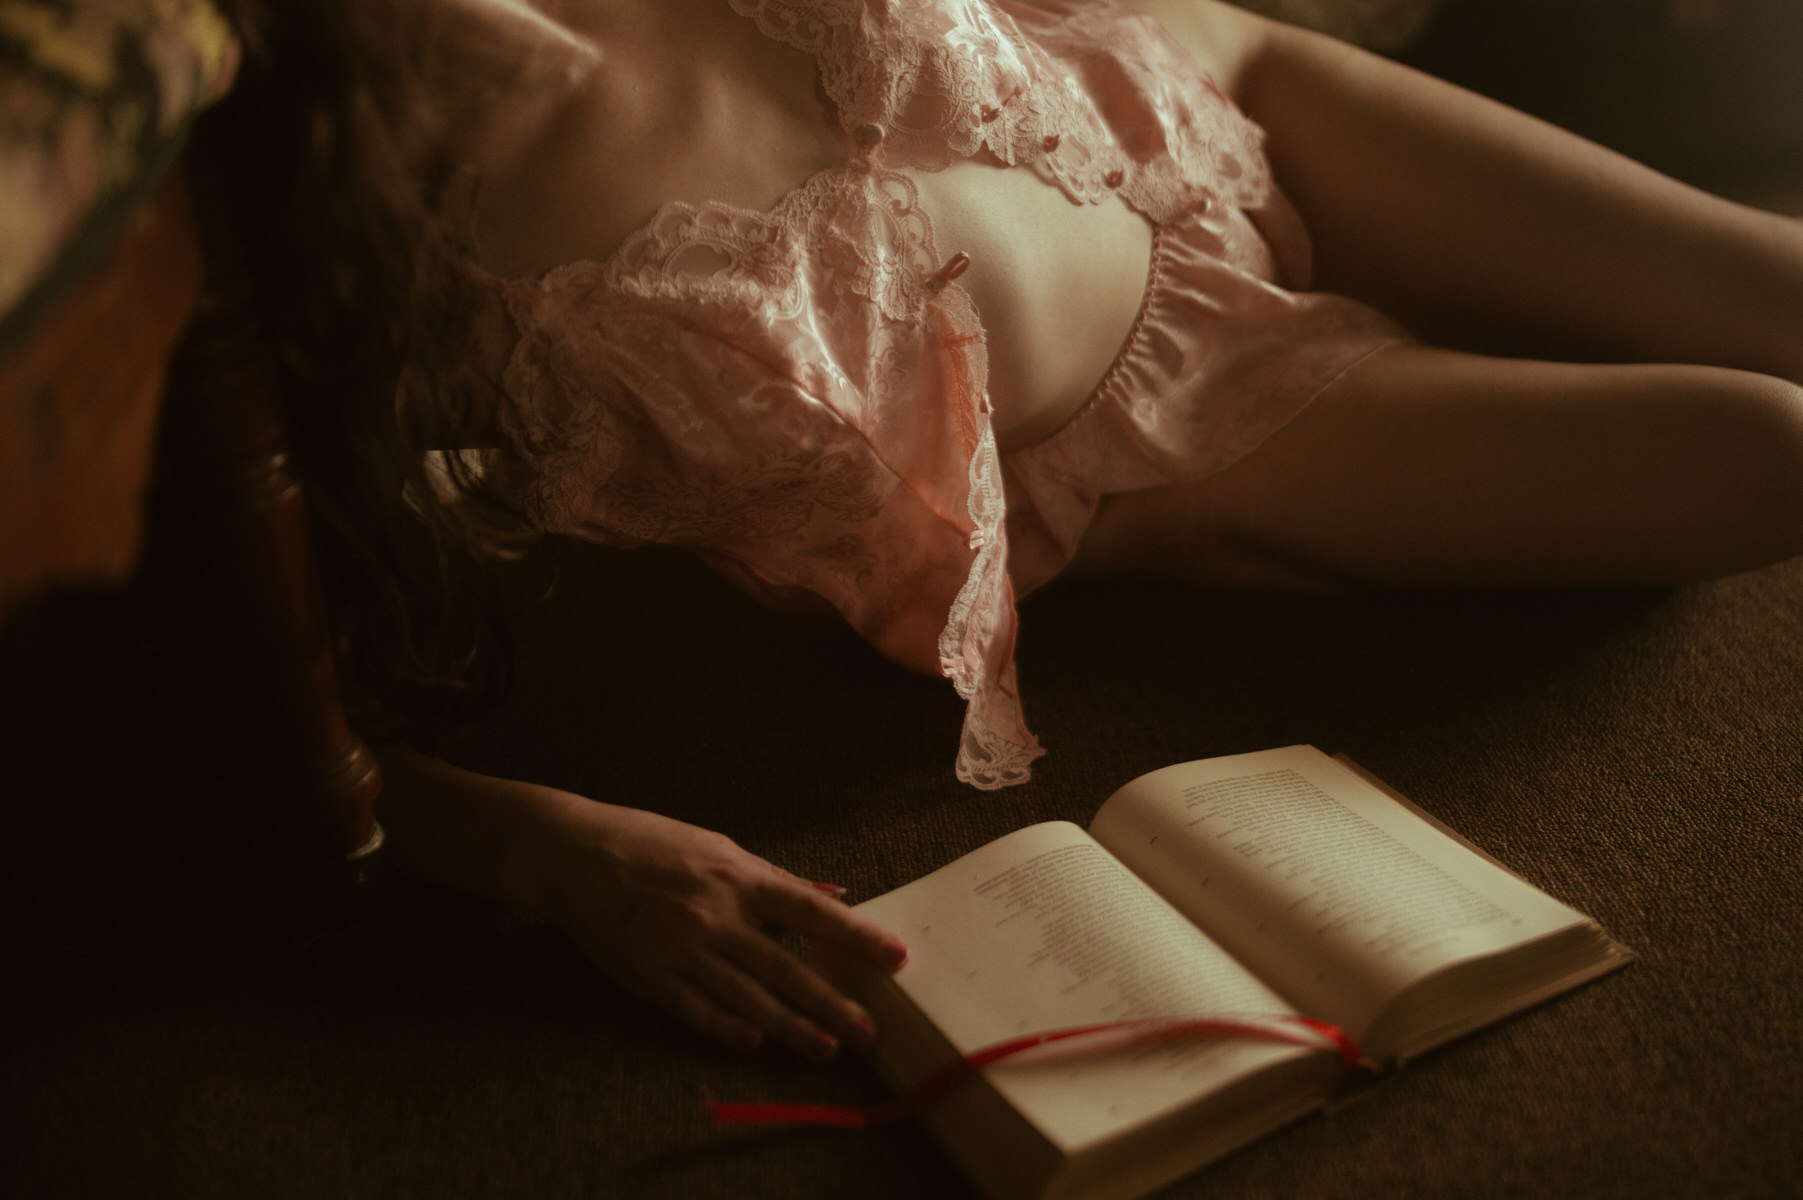 A Dallas woman enjoying boudoir photography while reading a book.